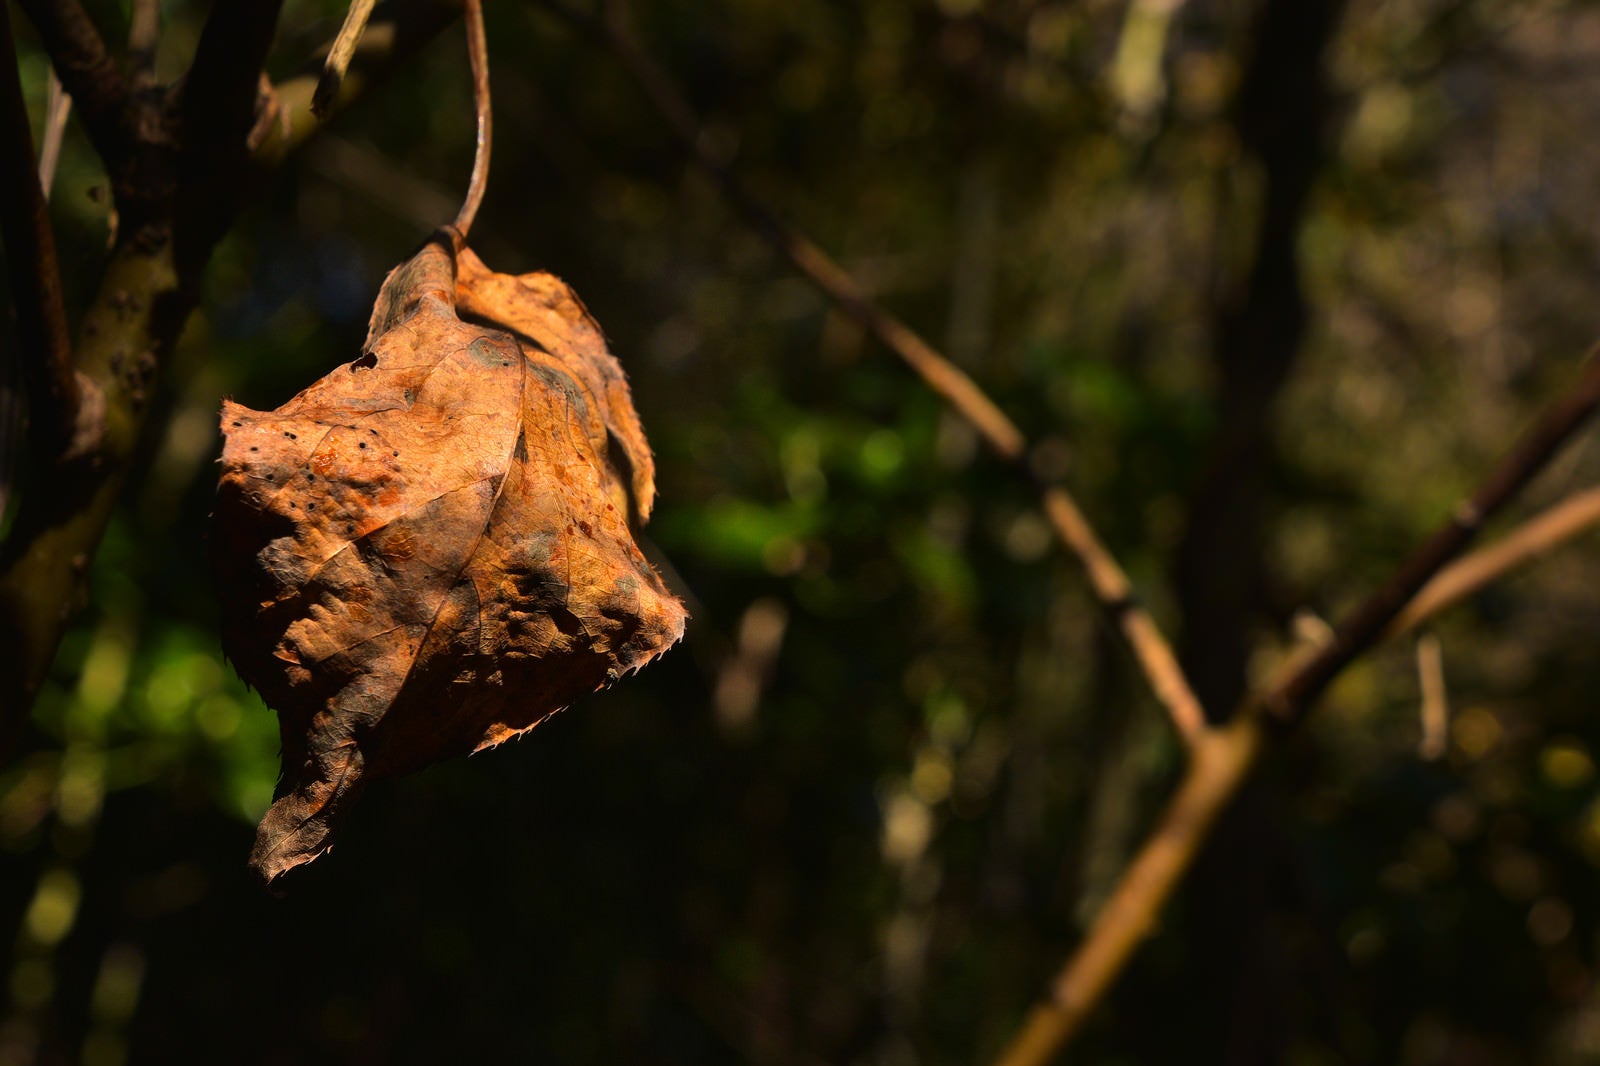 「吊られたまま朽ちた枯葉」の写真